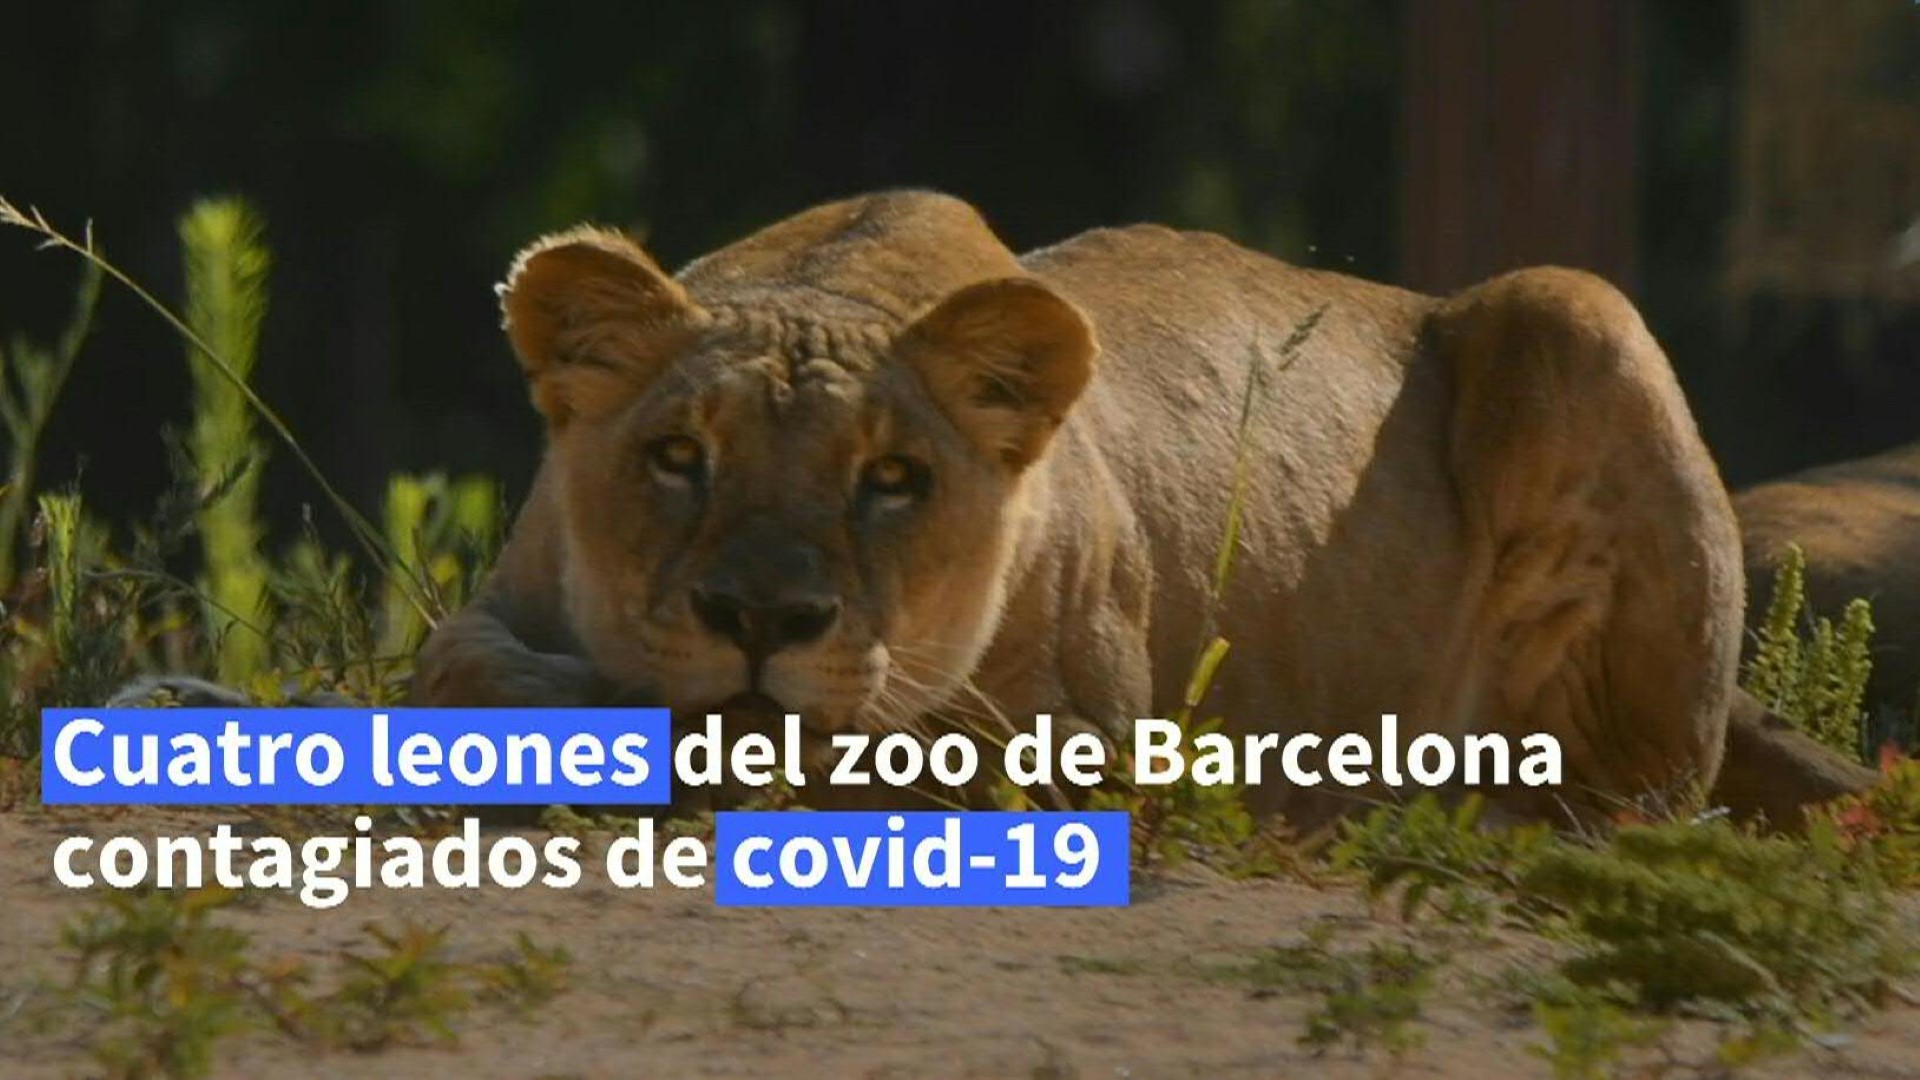 VIDEO | Cuatro leones de un zoo español se contagiaron de covid-19